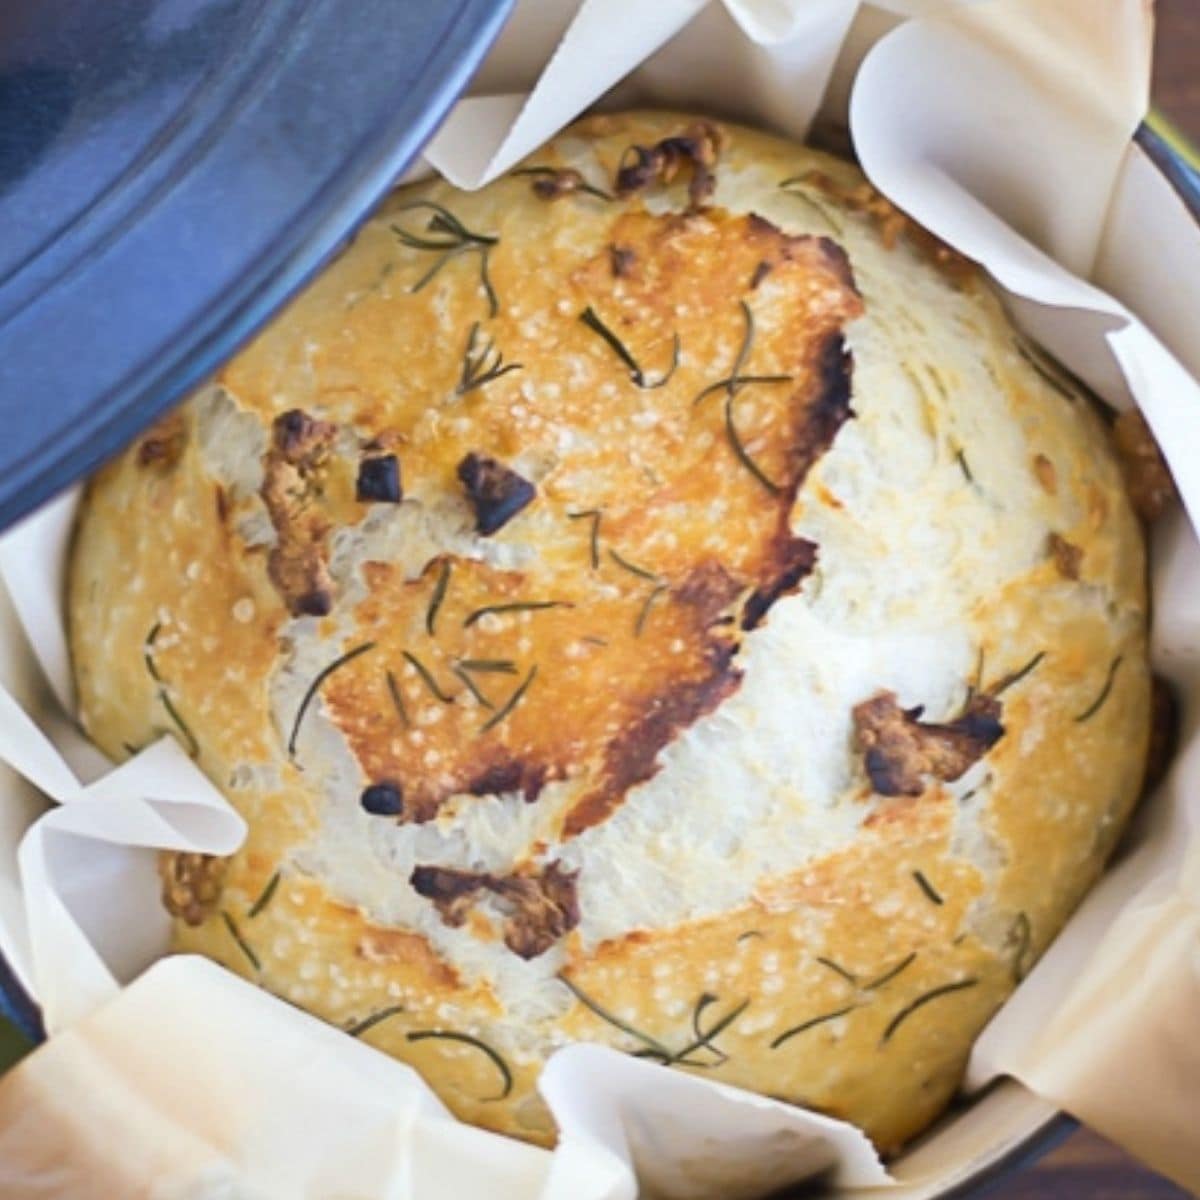 https://flouronmyface.com/wp-content/uploads/2019/01/no-knead-dutch-oven-bread.jpg